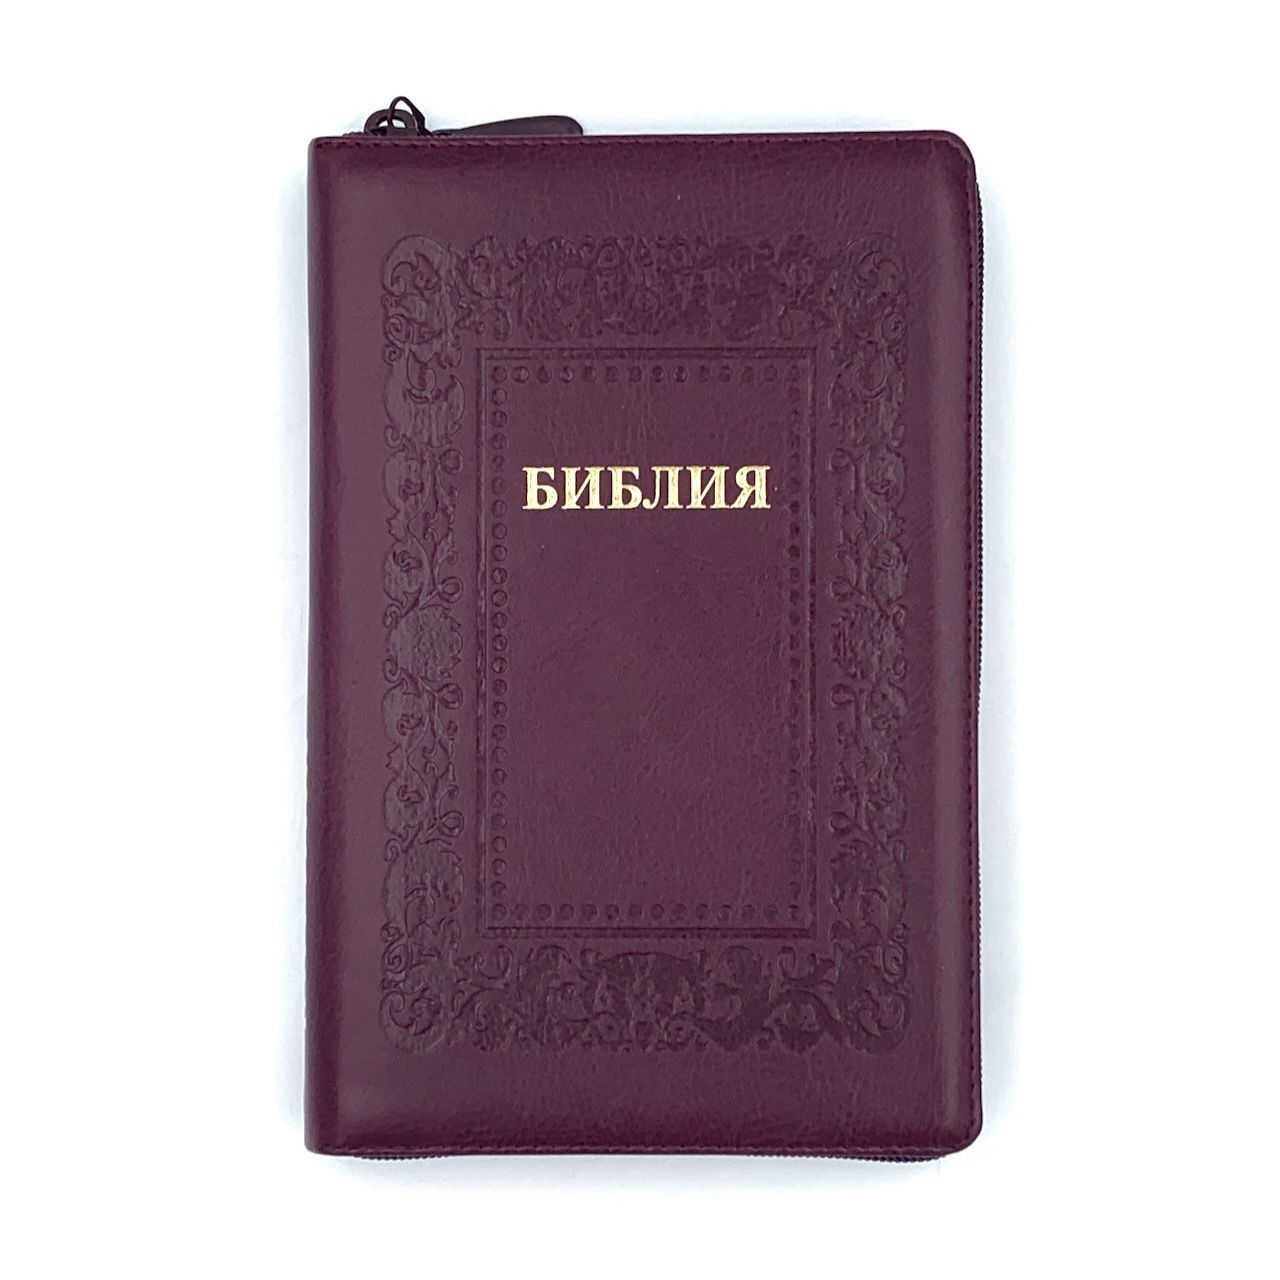 Библия 055z код 23055-8 дизайн "термо рамка барокко", переплет из искусственной кожи на молнии, цвет коричневый с оттенком бордо, средний формат, 143*220 мм